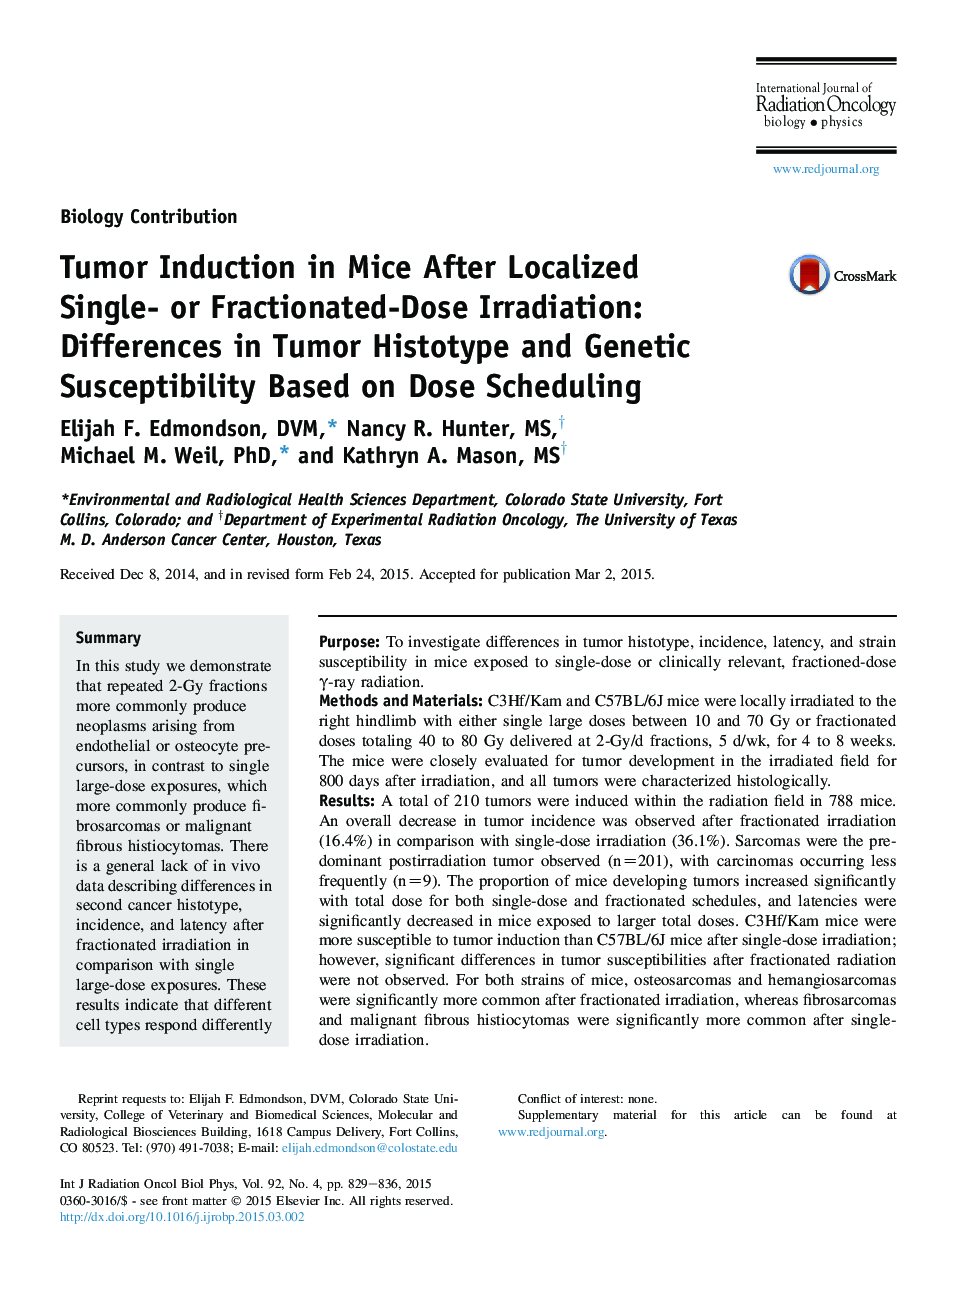 القای تومور در موش ها پس از موضع گیری موضعی یک یا دوز تابش: تفاوت هیستوپیت تومور و حساسیت ژنتیکی بر اساس برنامه ریزی دوز 